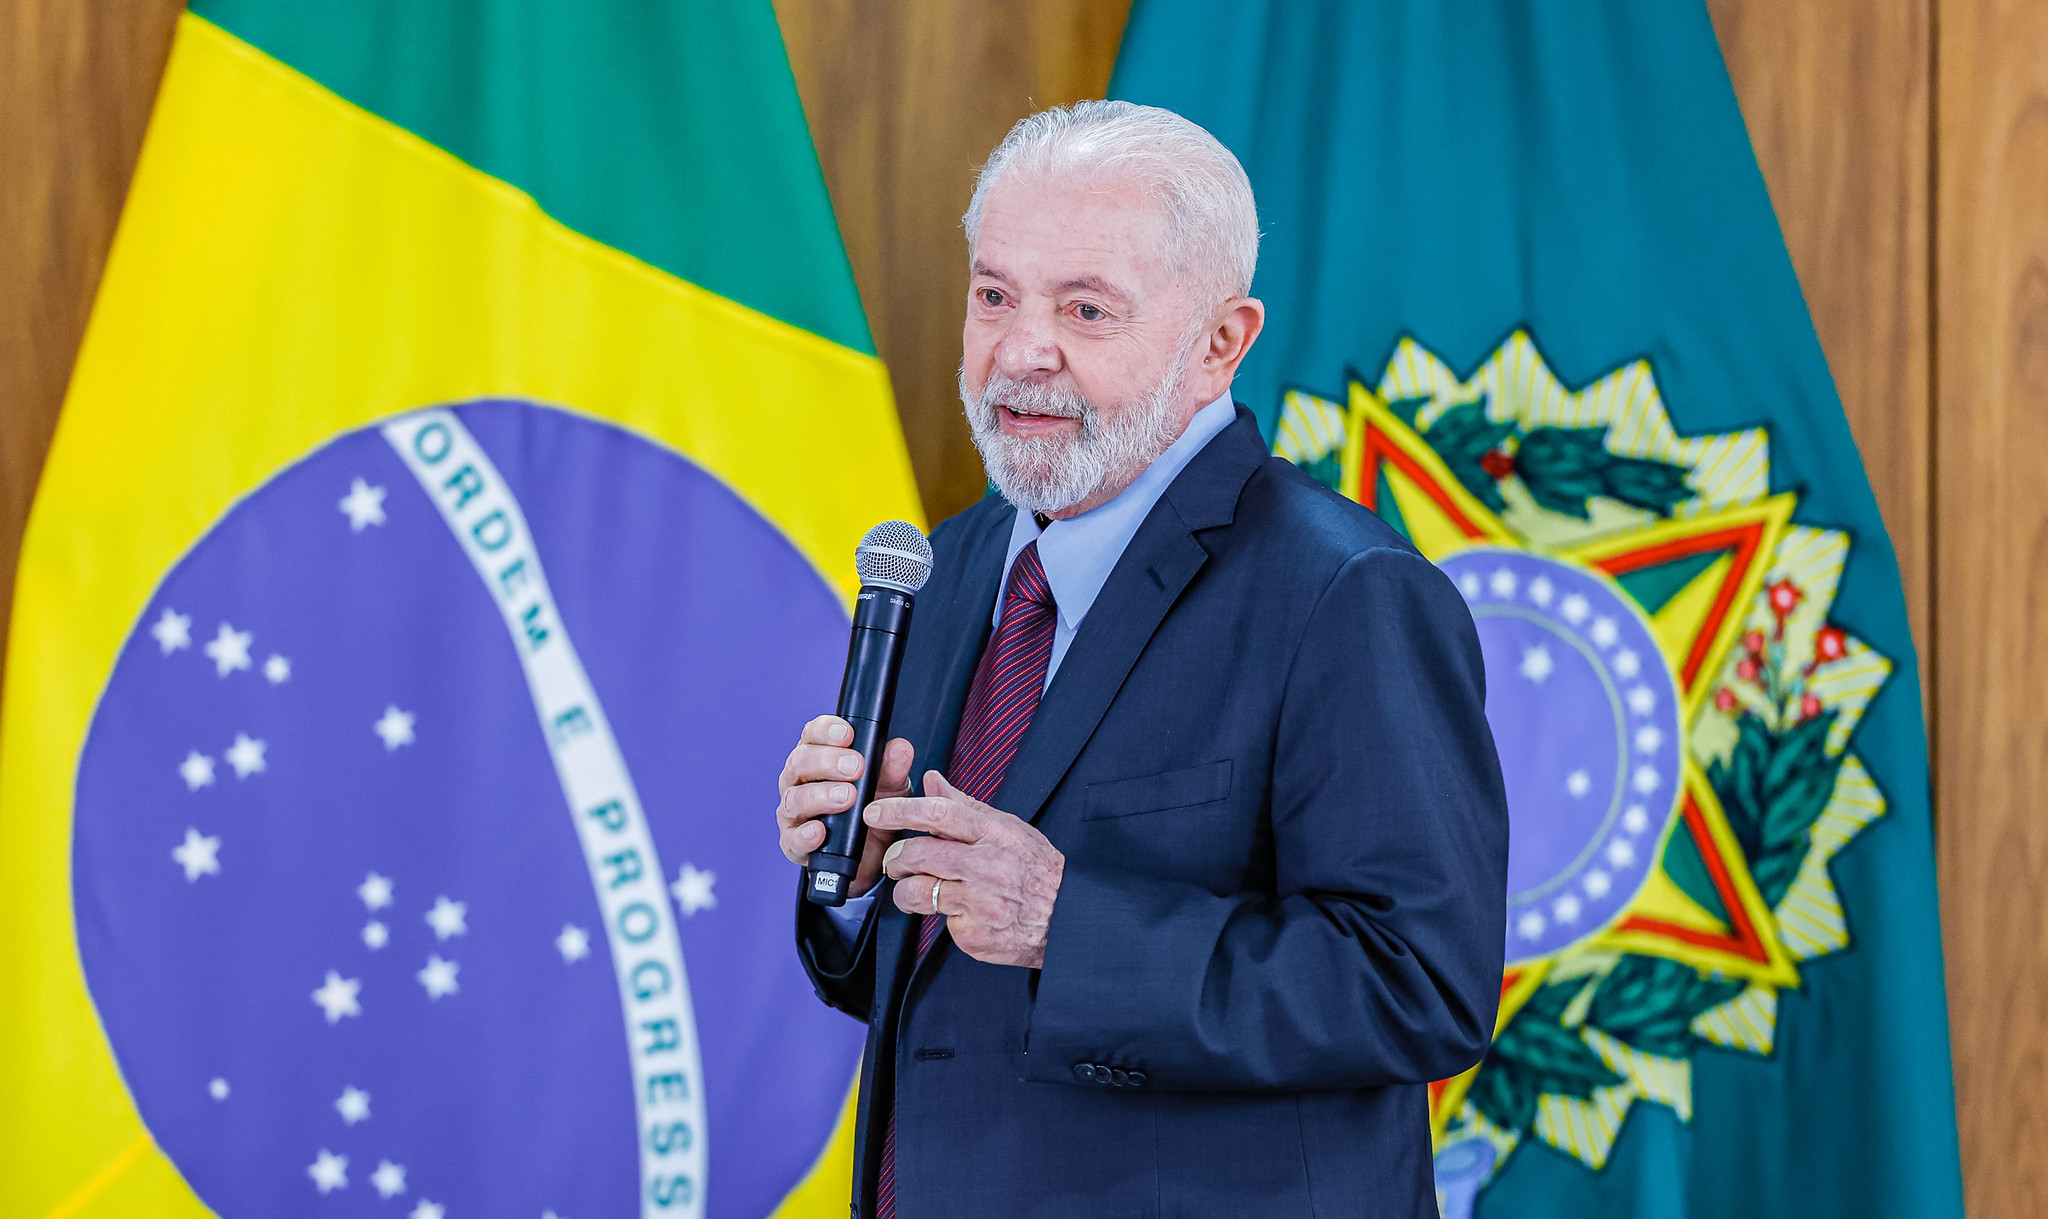 Aumento de salário para servidores não deve ser na integralidade do que os servidores estão pedindo, disse Lula. Foto: Ricardo Stuckert/PR